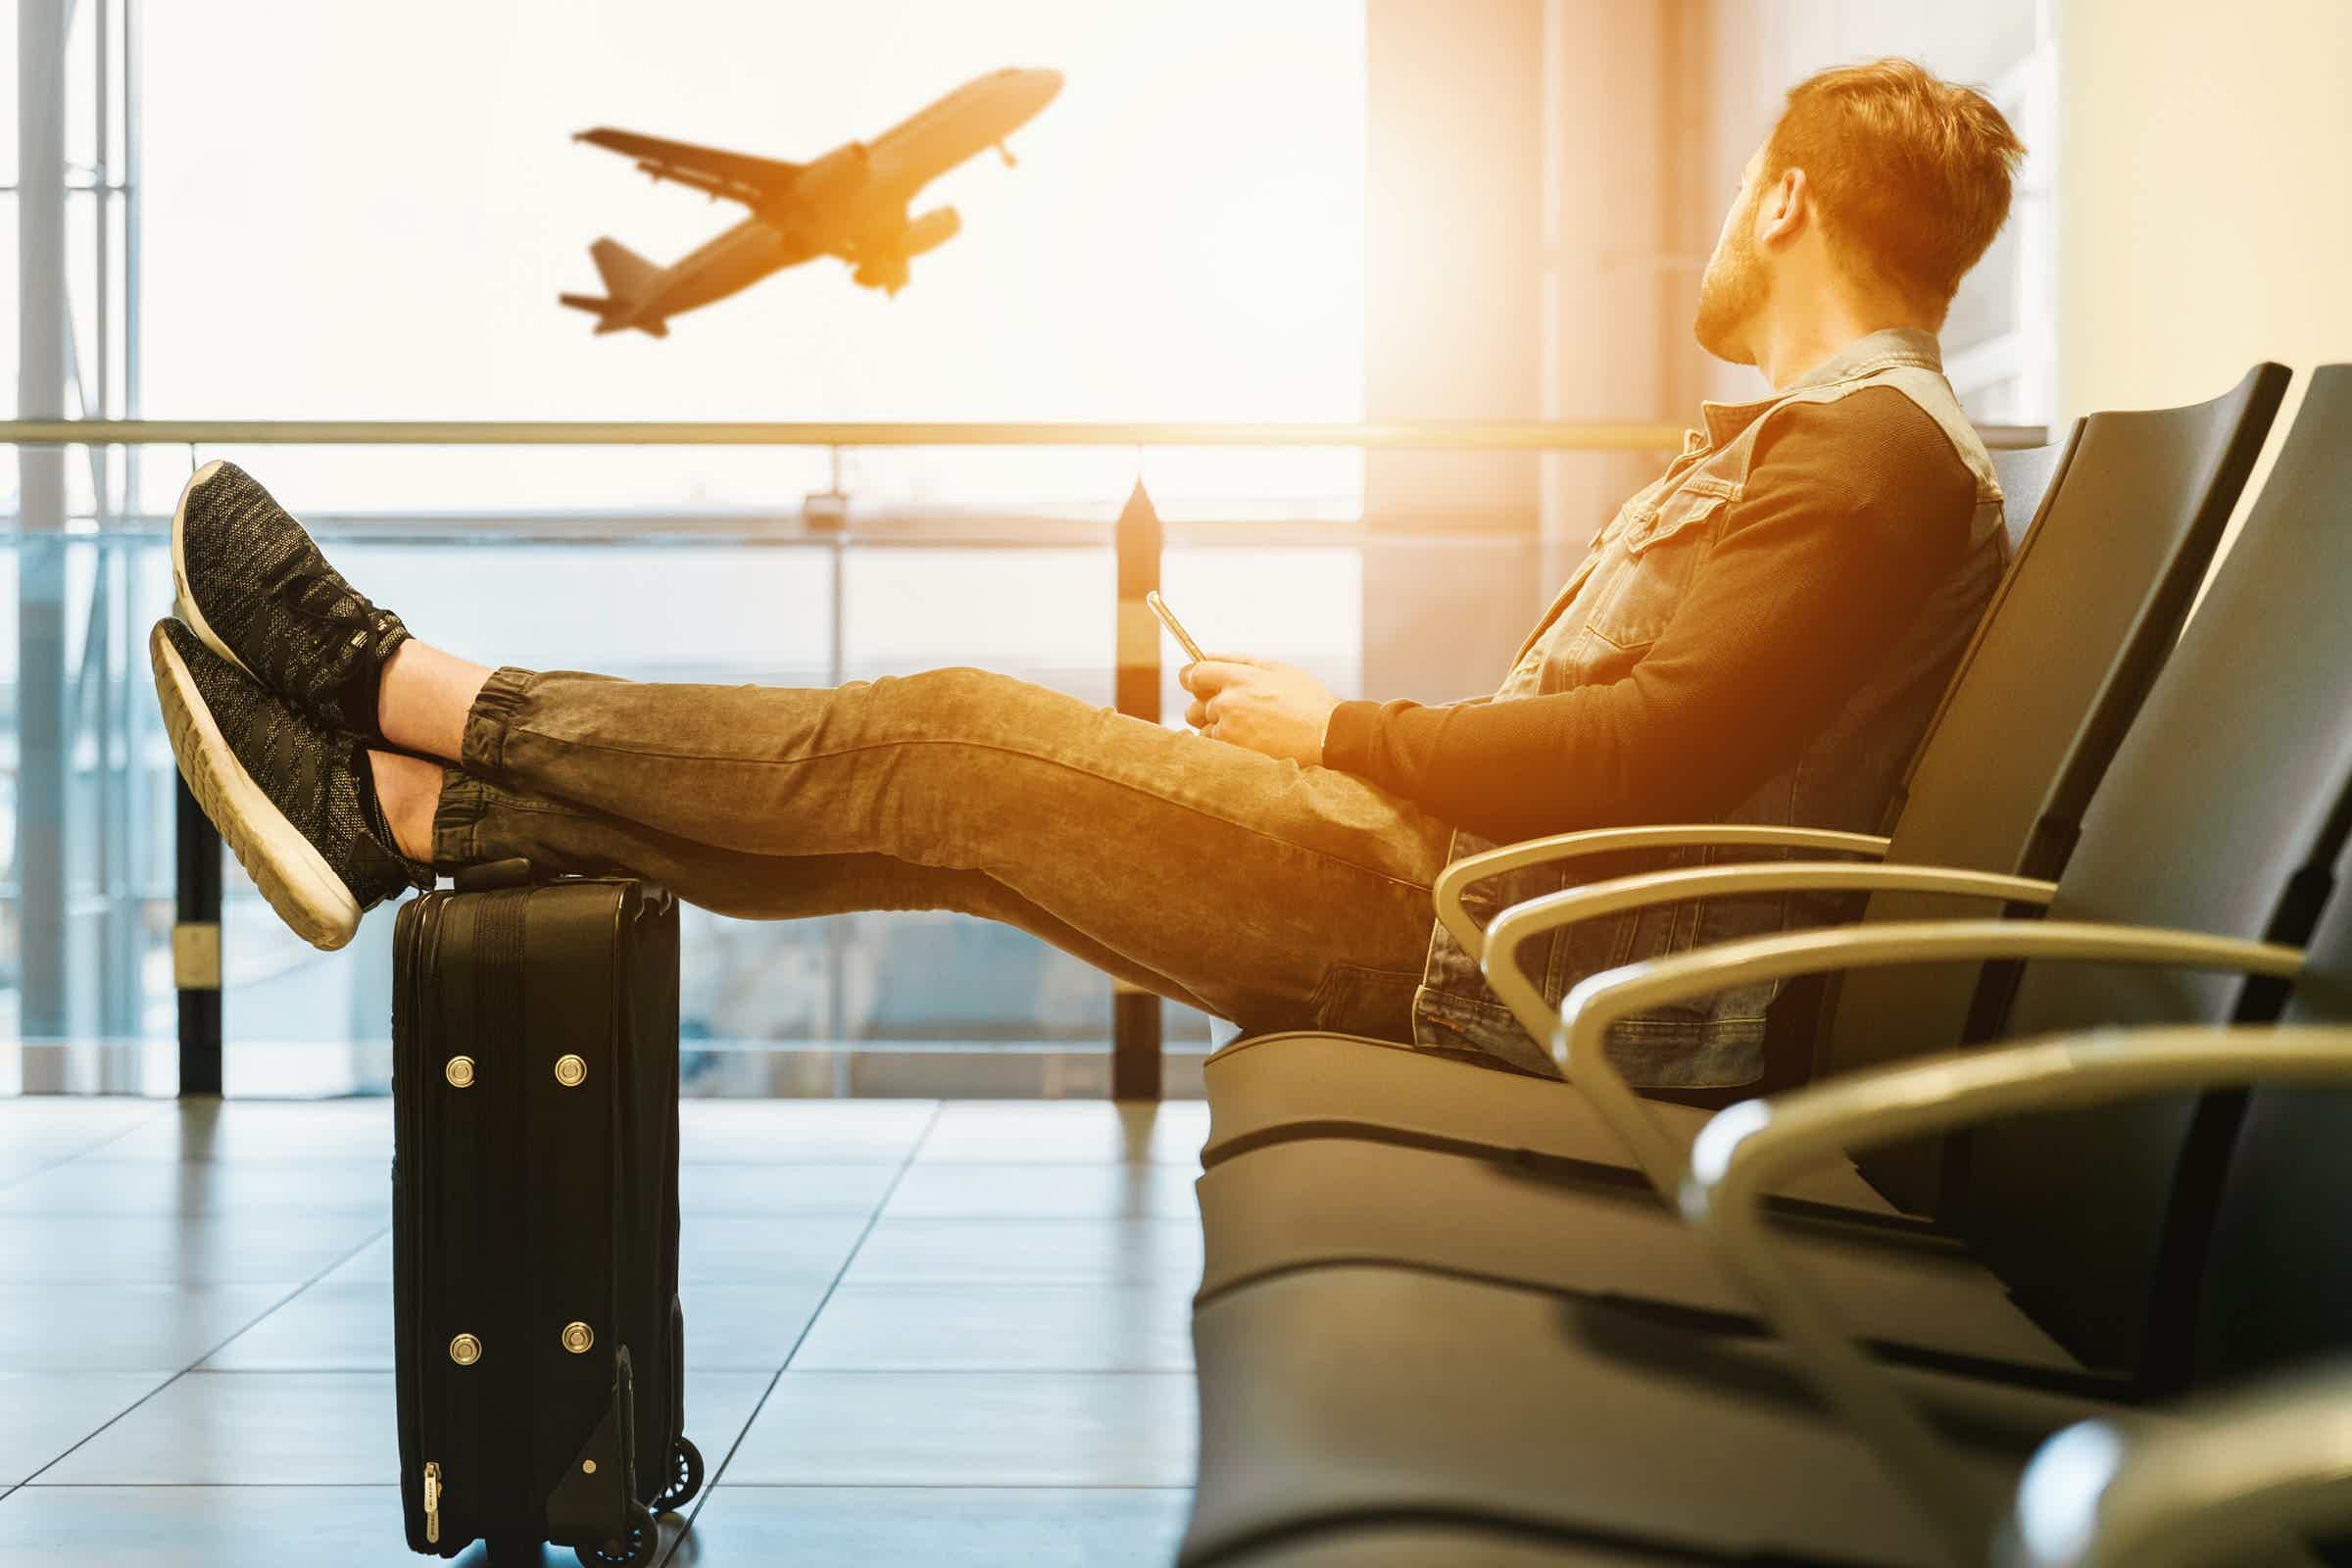 homem sentado em um aeroporto olhando para um avião decolar